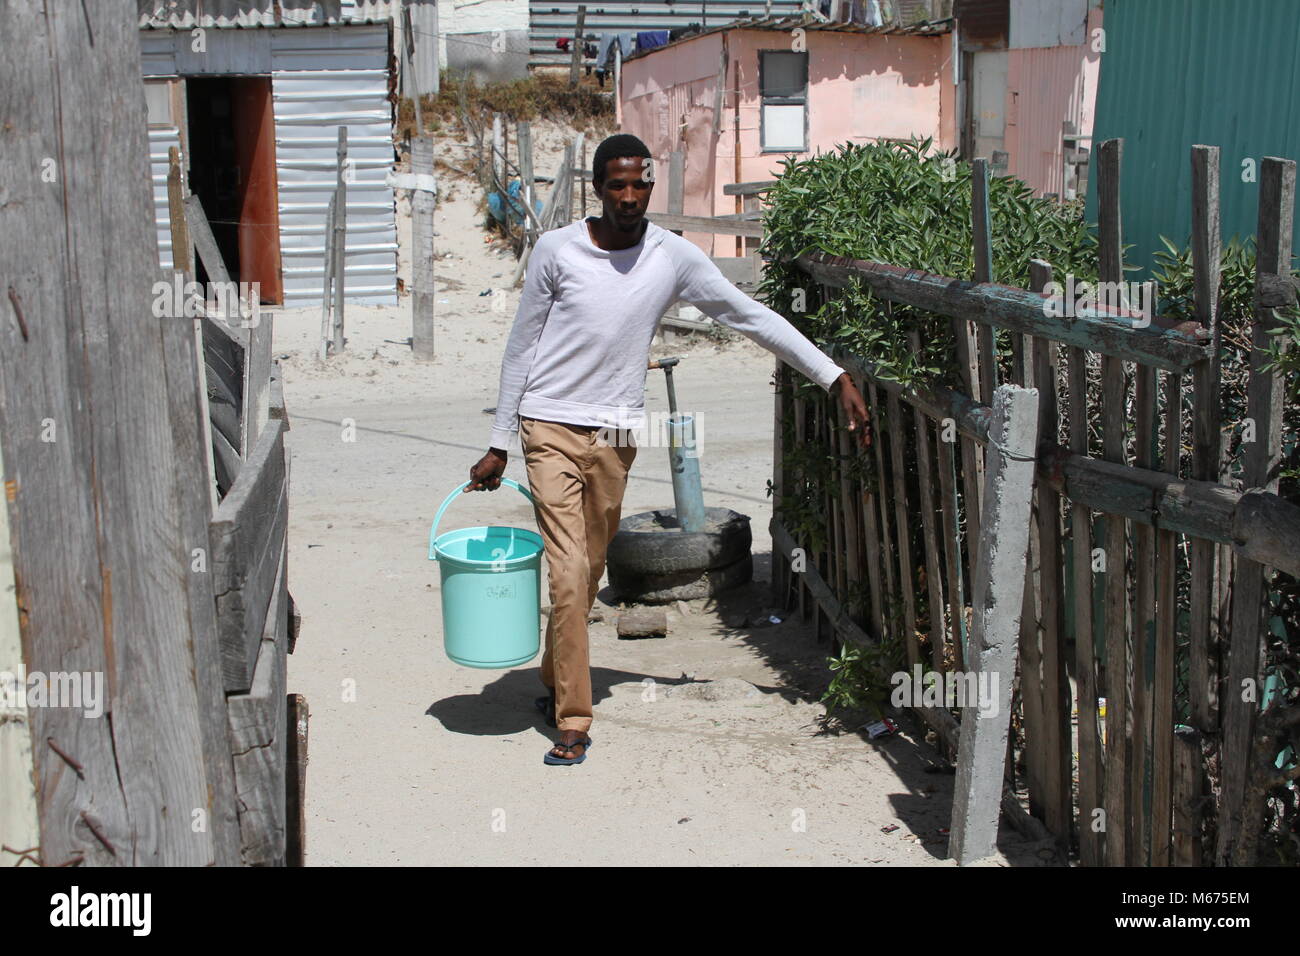 09 febbraio 2018, Sud Africa, Cape Town, Khayelitsha: Anele Goba, 34, che vive nella baraccopoli di Khayelitsha zona fuori Città del Capo, dispone di trasportare acqua da un rubinetto comunale alla sua capanna ogni giorno. Ha poca simpatia per la classe media, che teme "zero hour', quando Cape Town ha per spegnere l'acqua a causa della siccità. Foto: Kristin Palitza/dpa Foto Stock